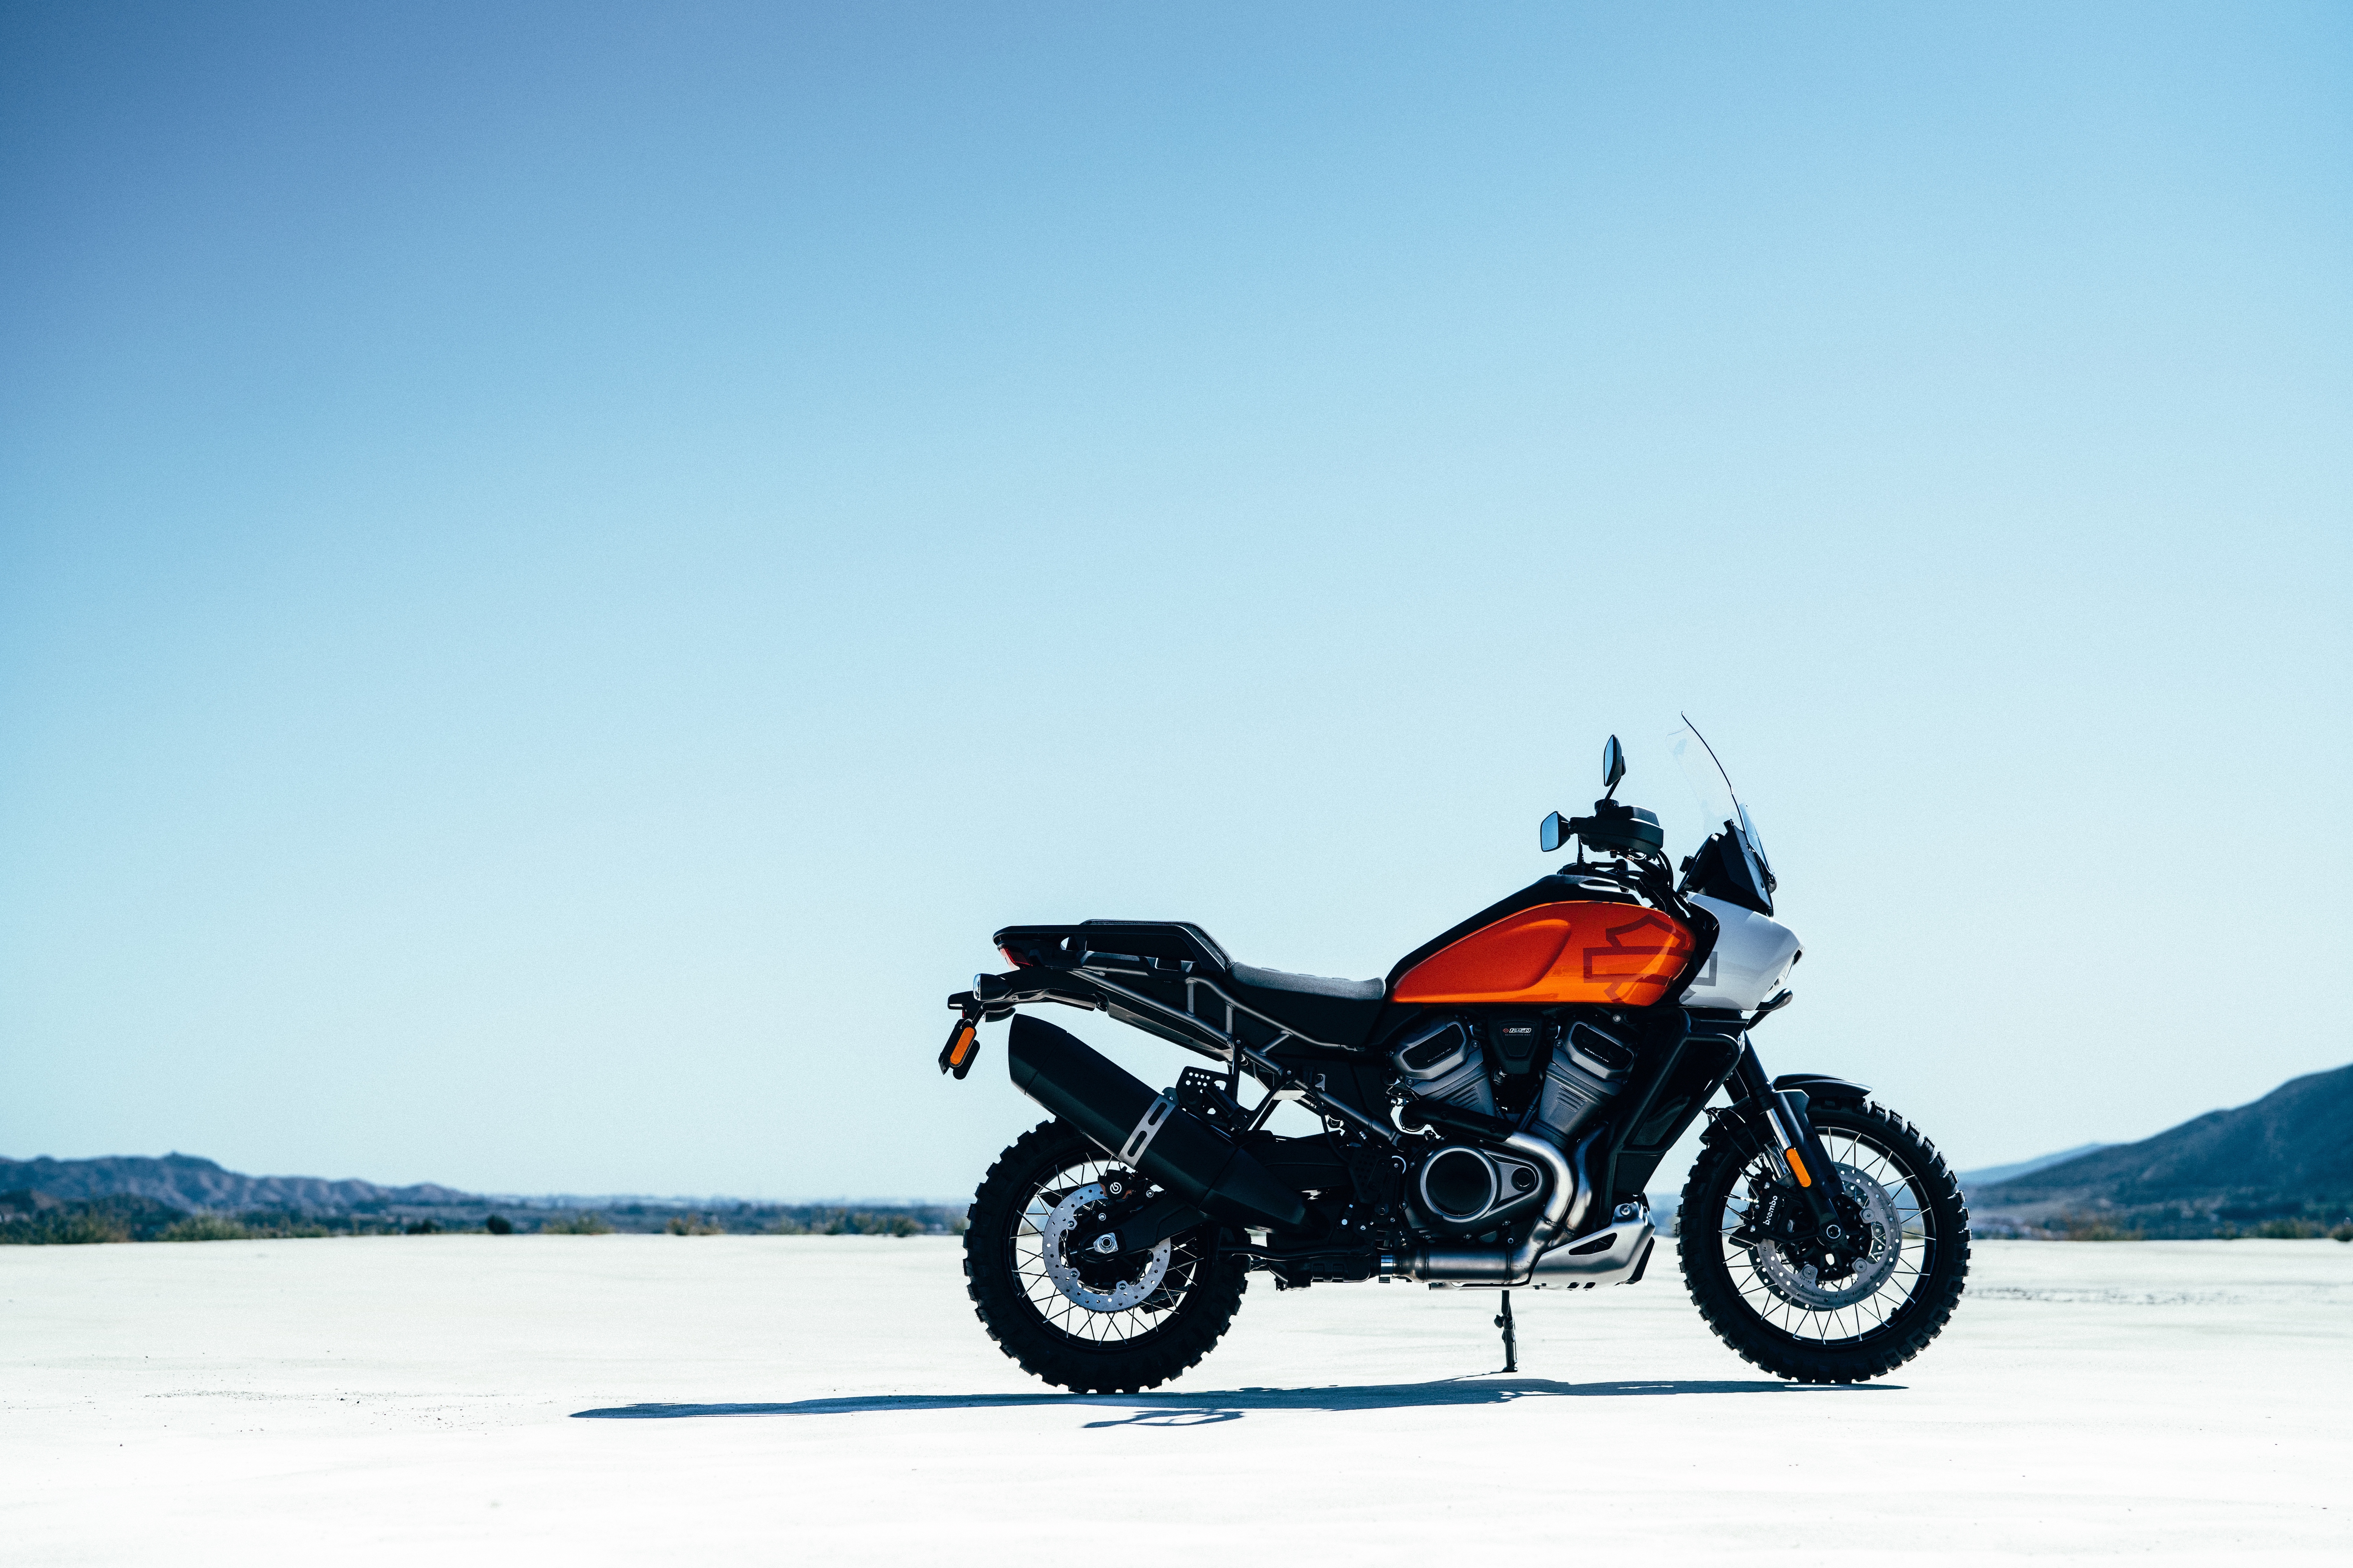 Zastaki.com - Новый стильный мотоцикл Harley-Davidson Pan America, 2021 года на фоне неба